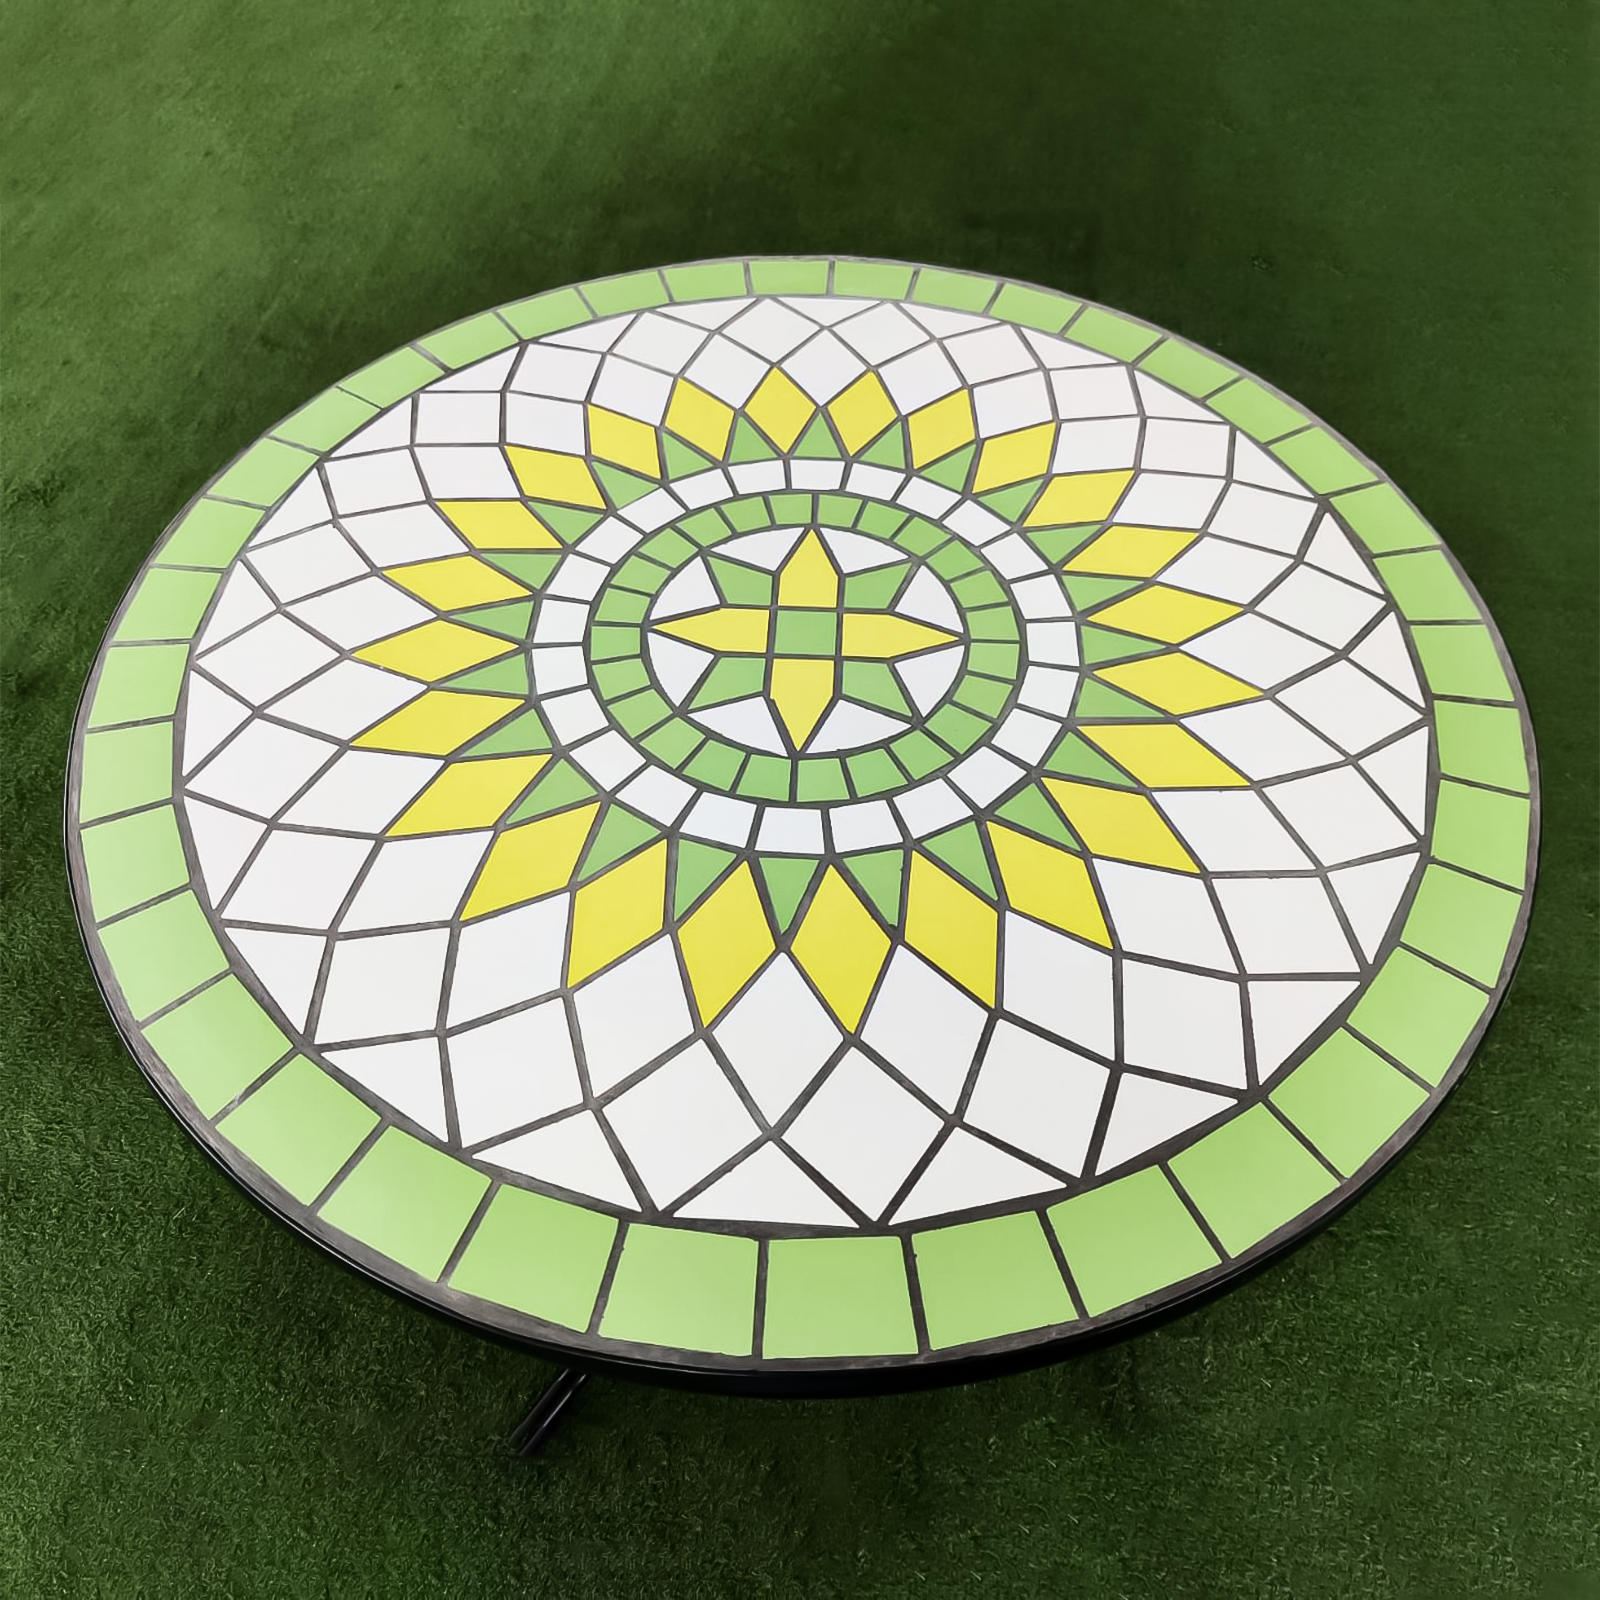 Tavolo da pranzo in acciaio Limonaia piano con terracotta mosaico per giardino